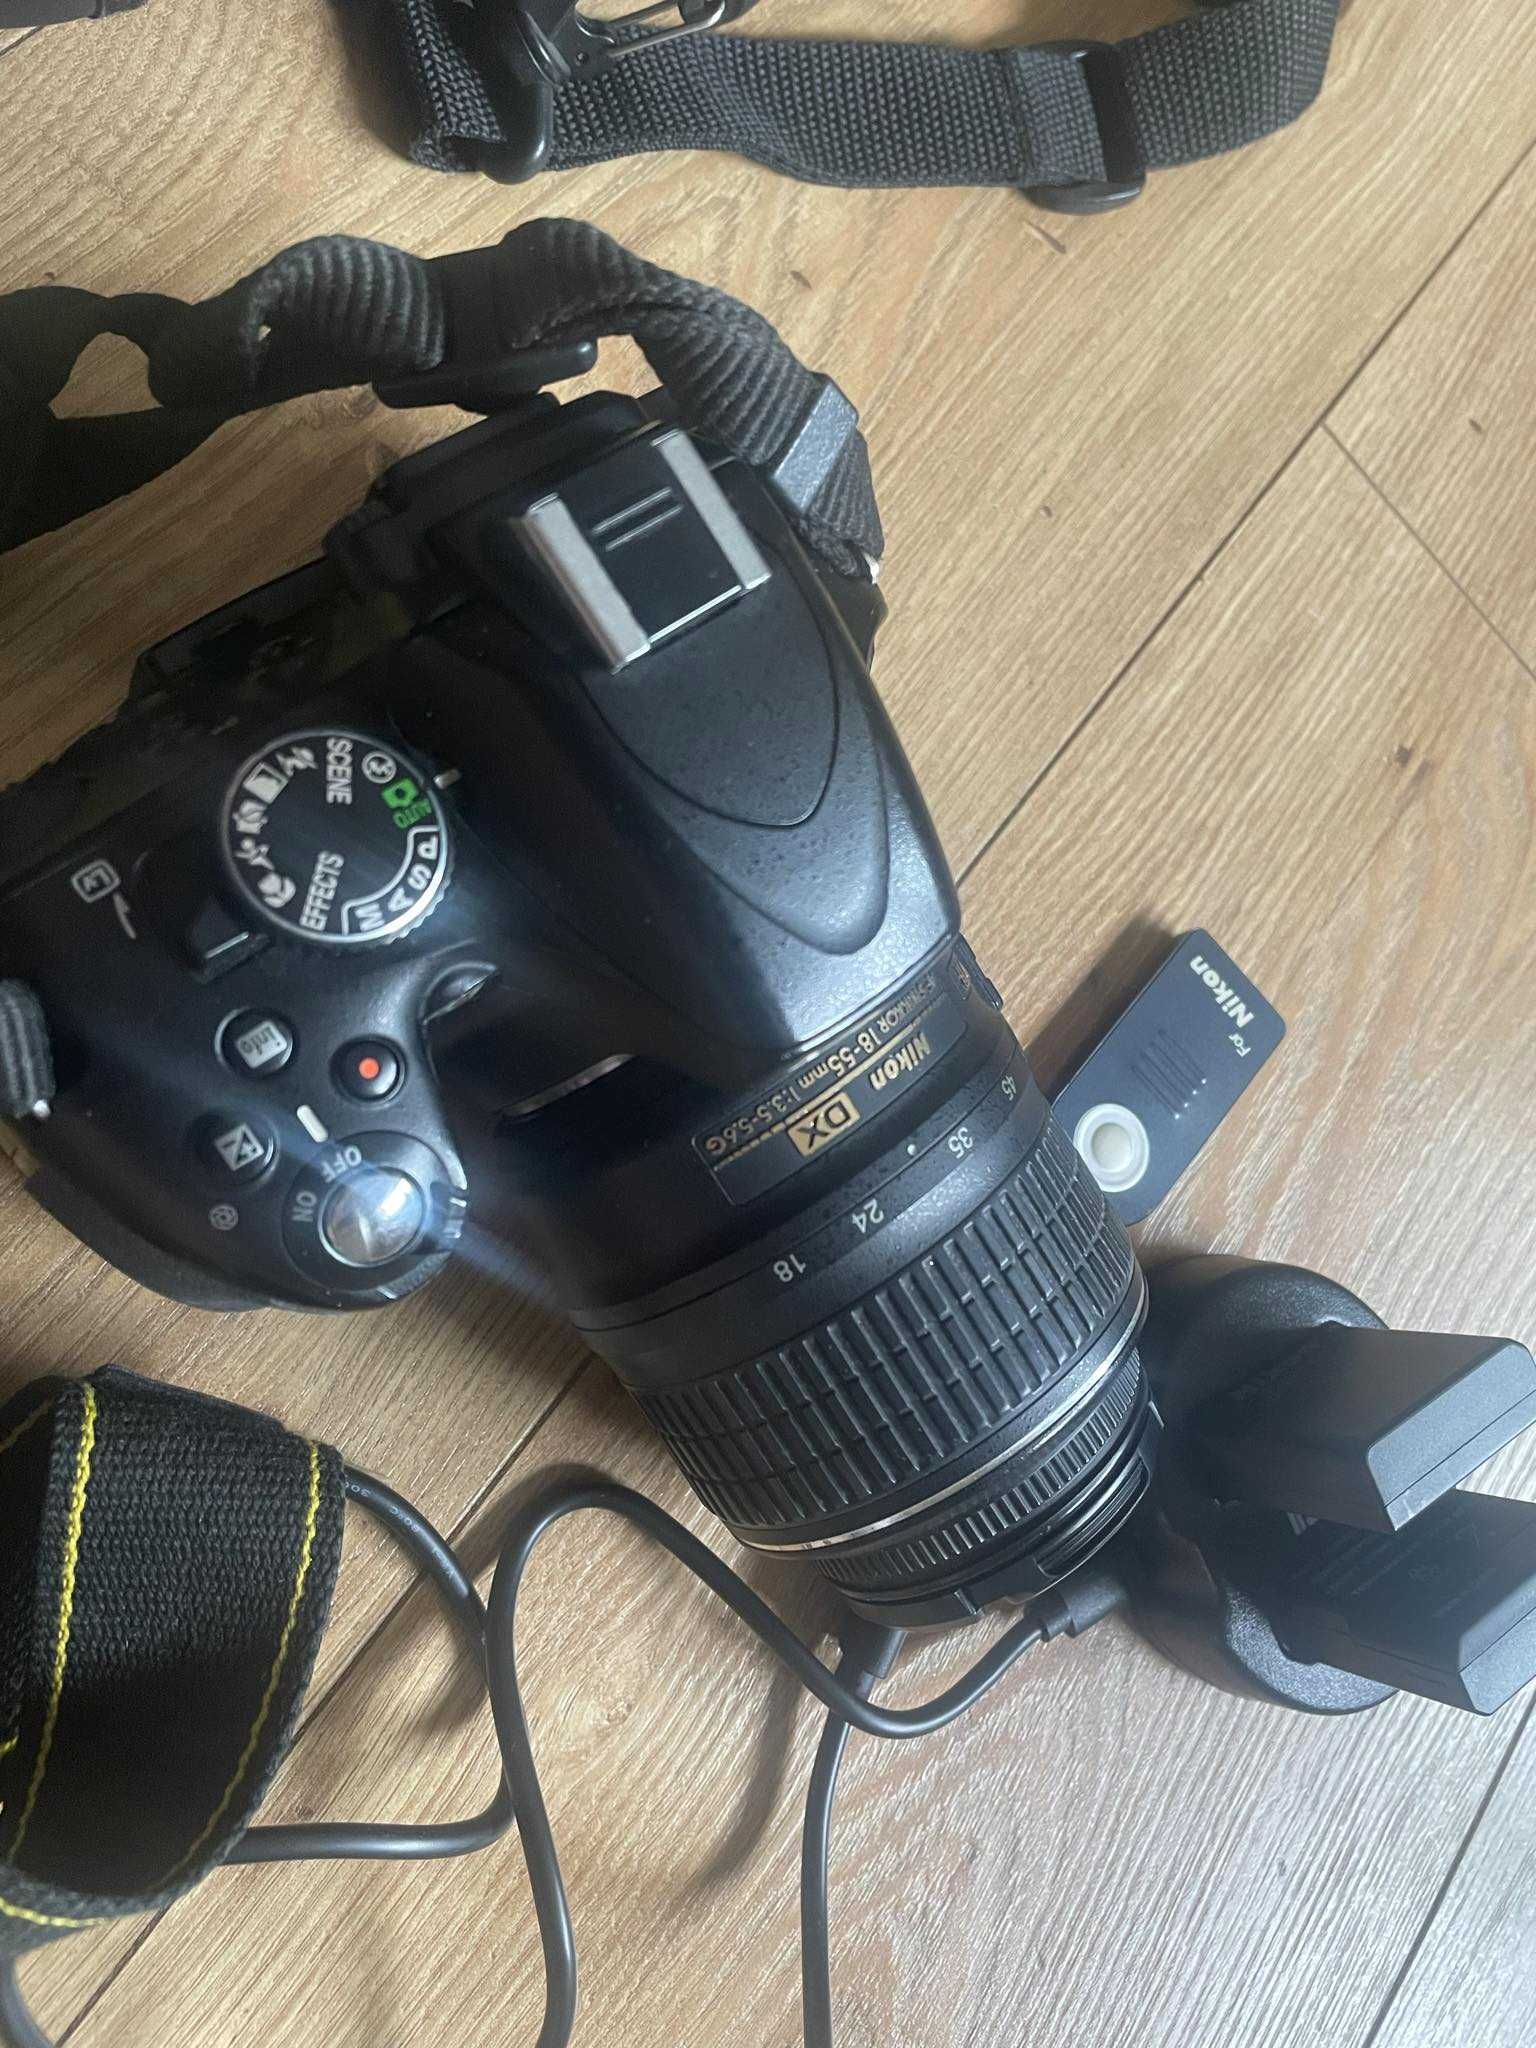 Aparat lustrzanka Nikon D5100 wraz z obiektywem Nikkor 18-55 zestaw